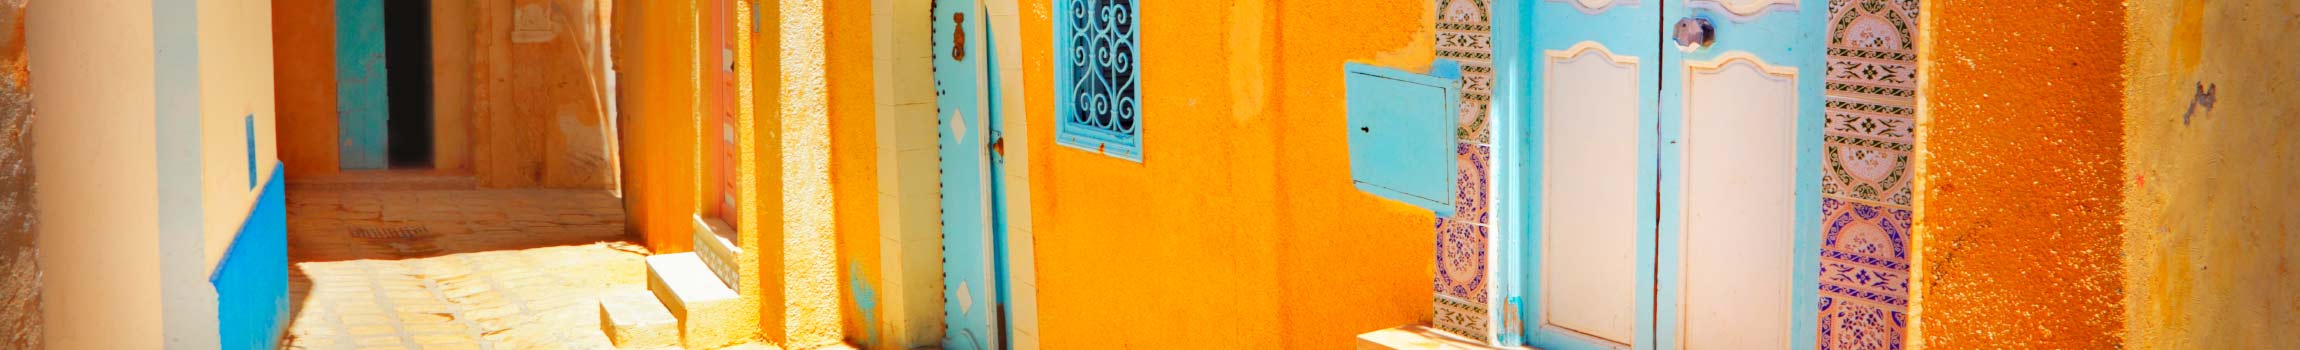 Bunte Häuser mit blauen Türen in Altstädten in Tunesien